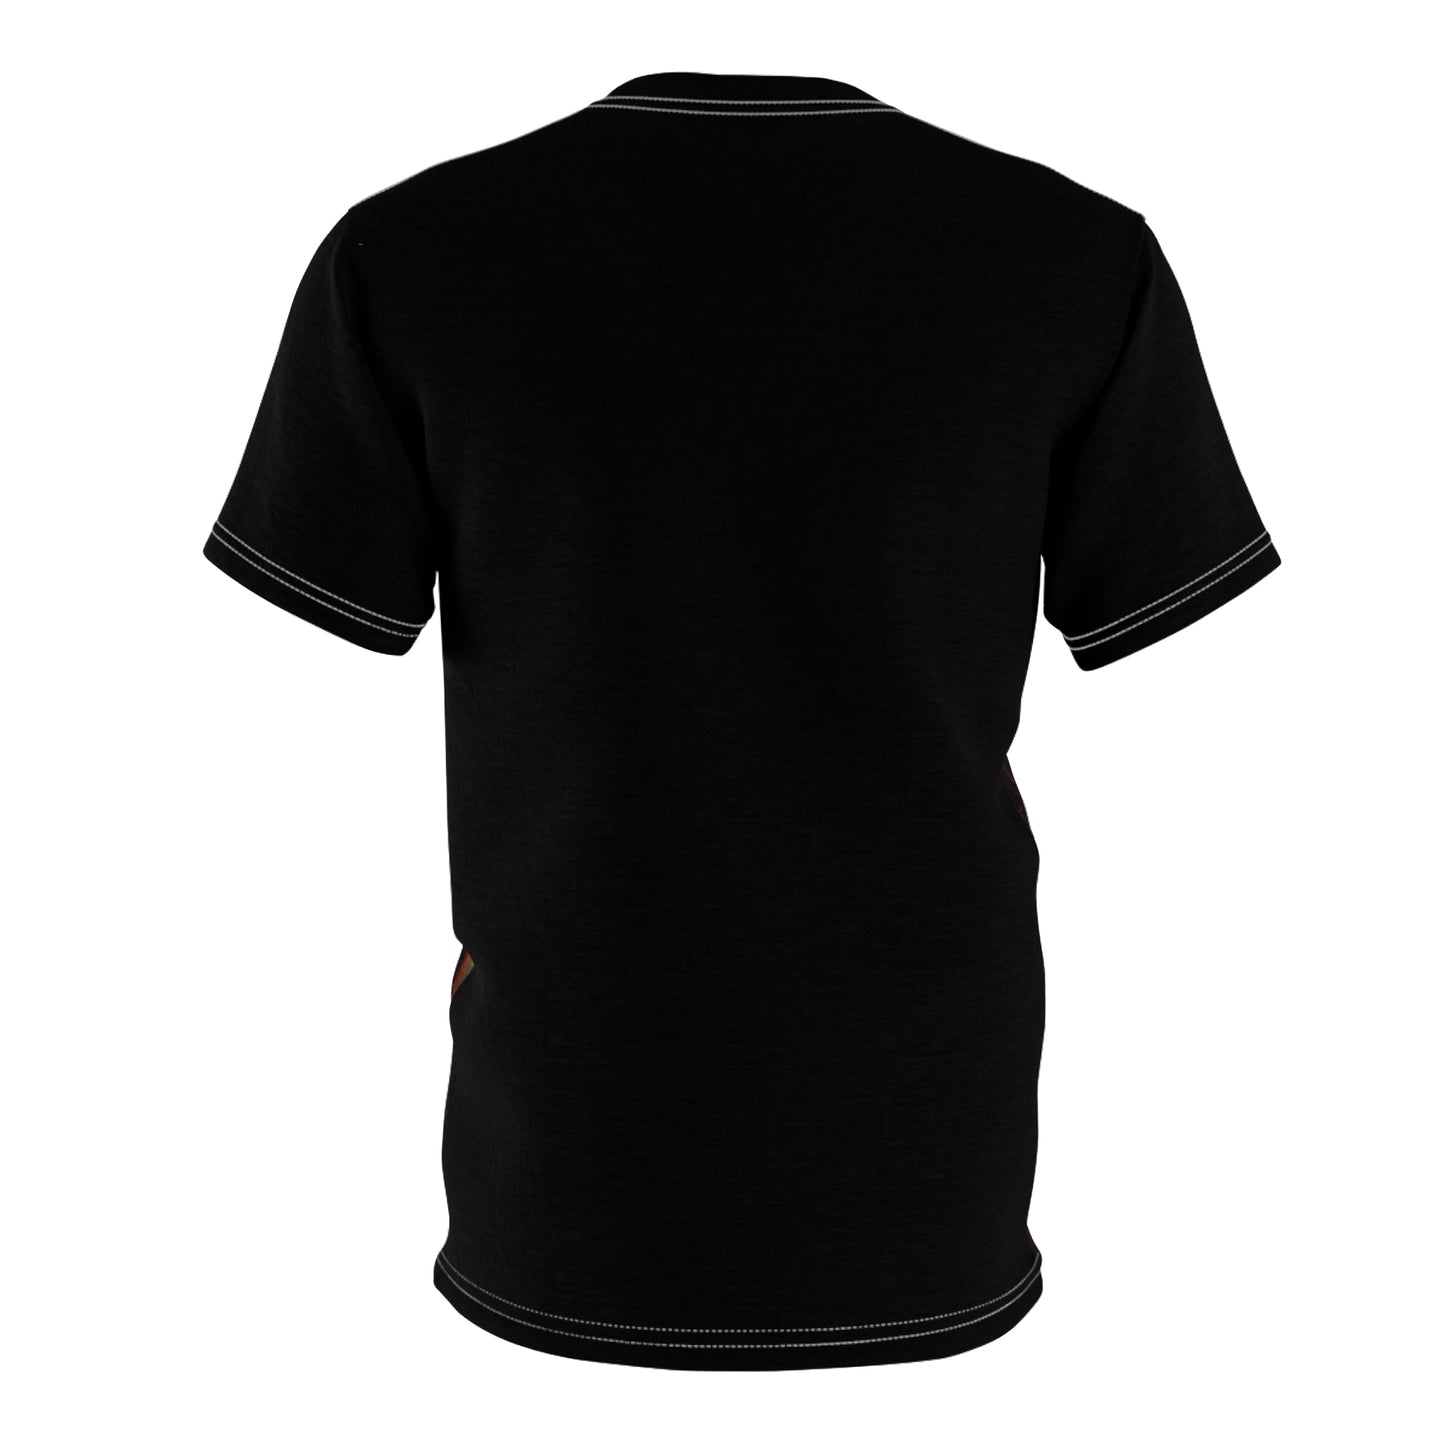 Gaslighter - Unisex All-Over Print Cut & Sew T-Shirt